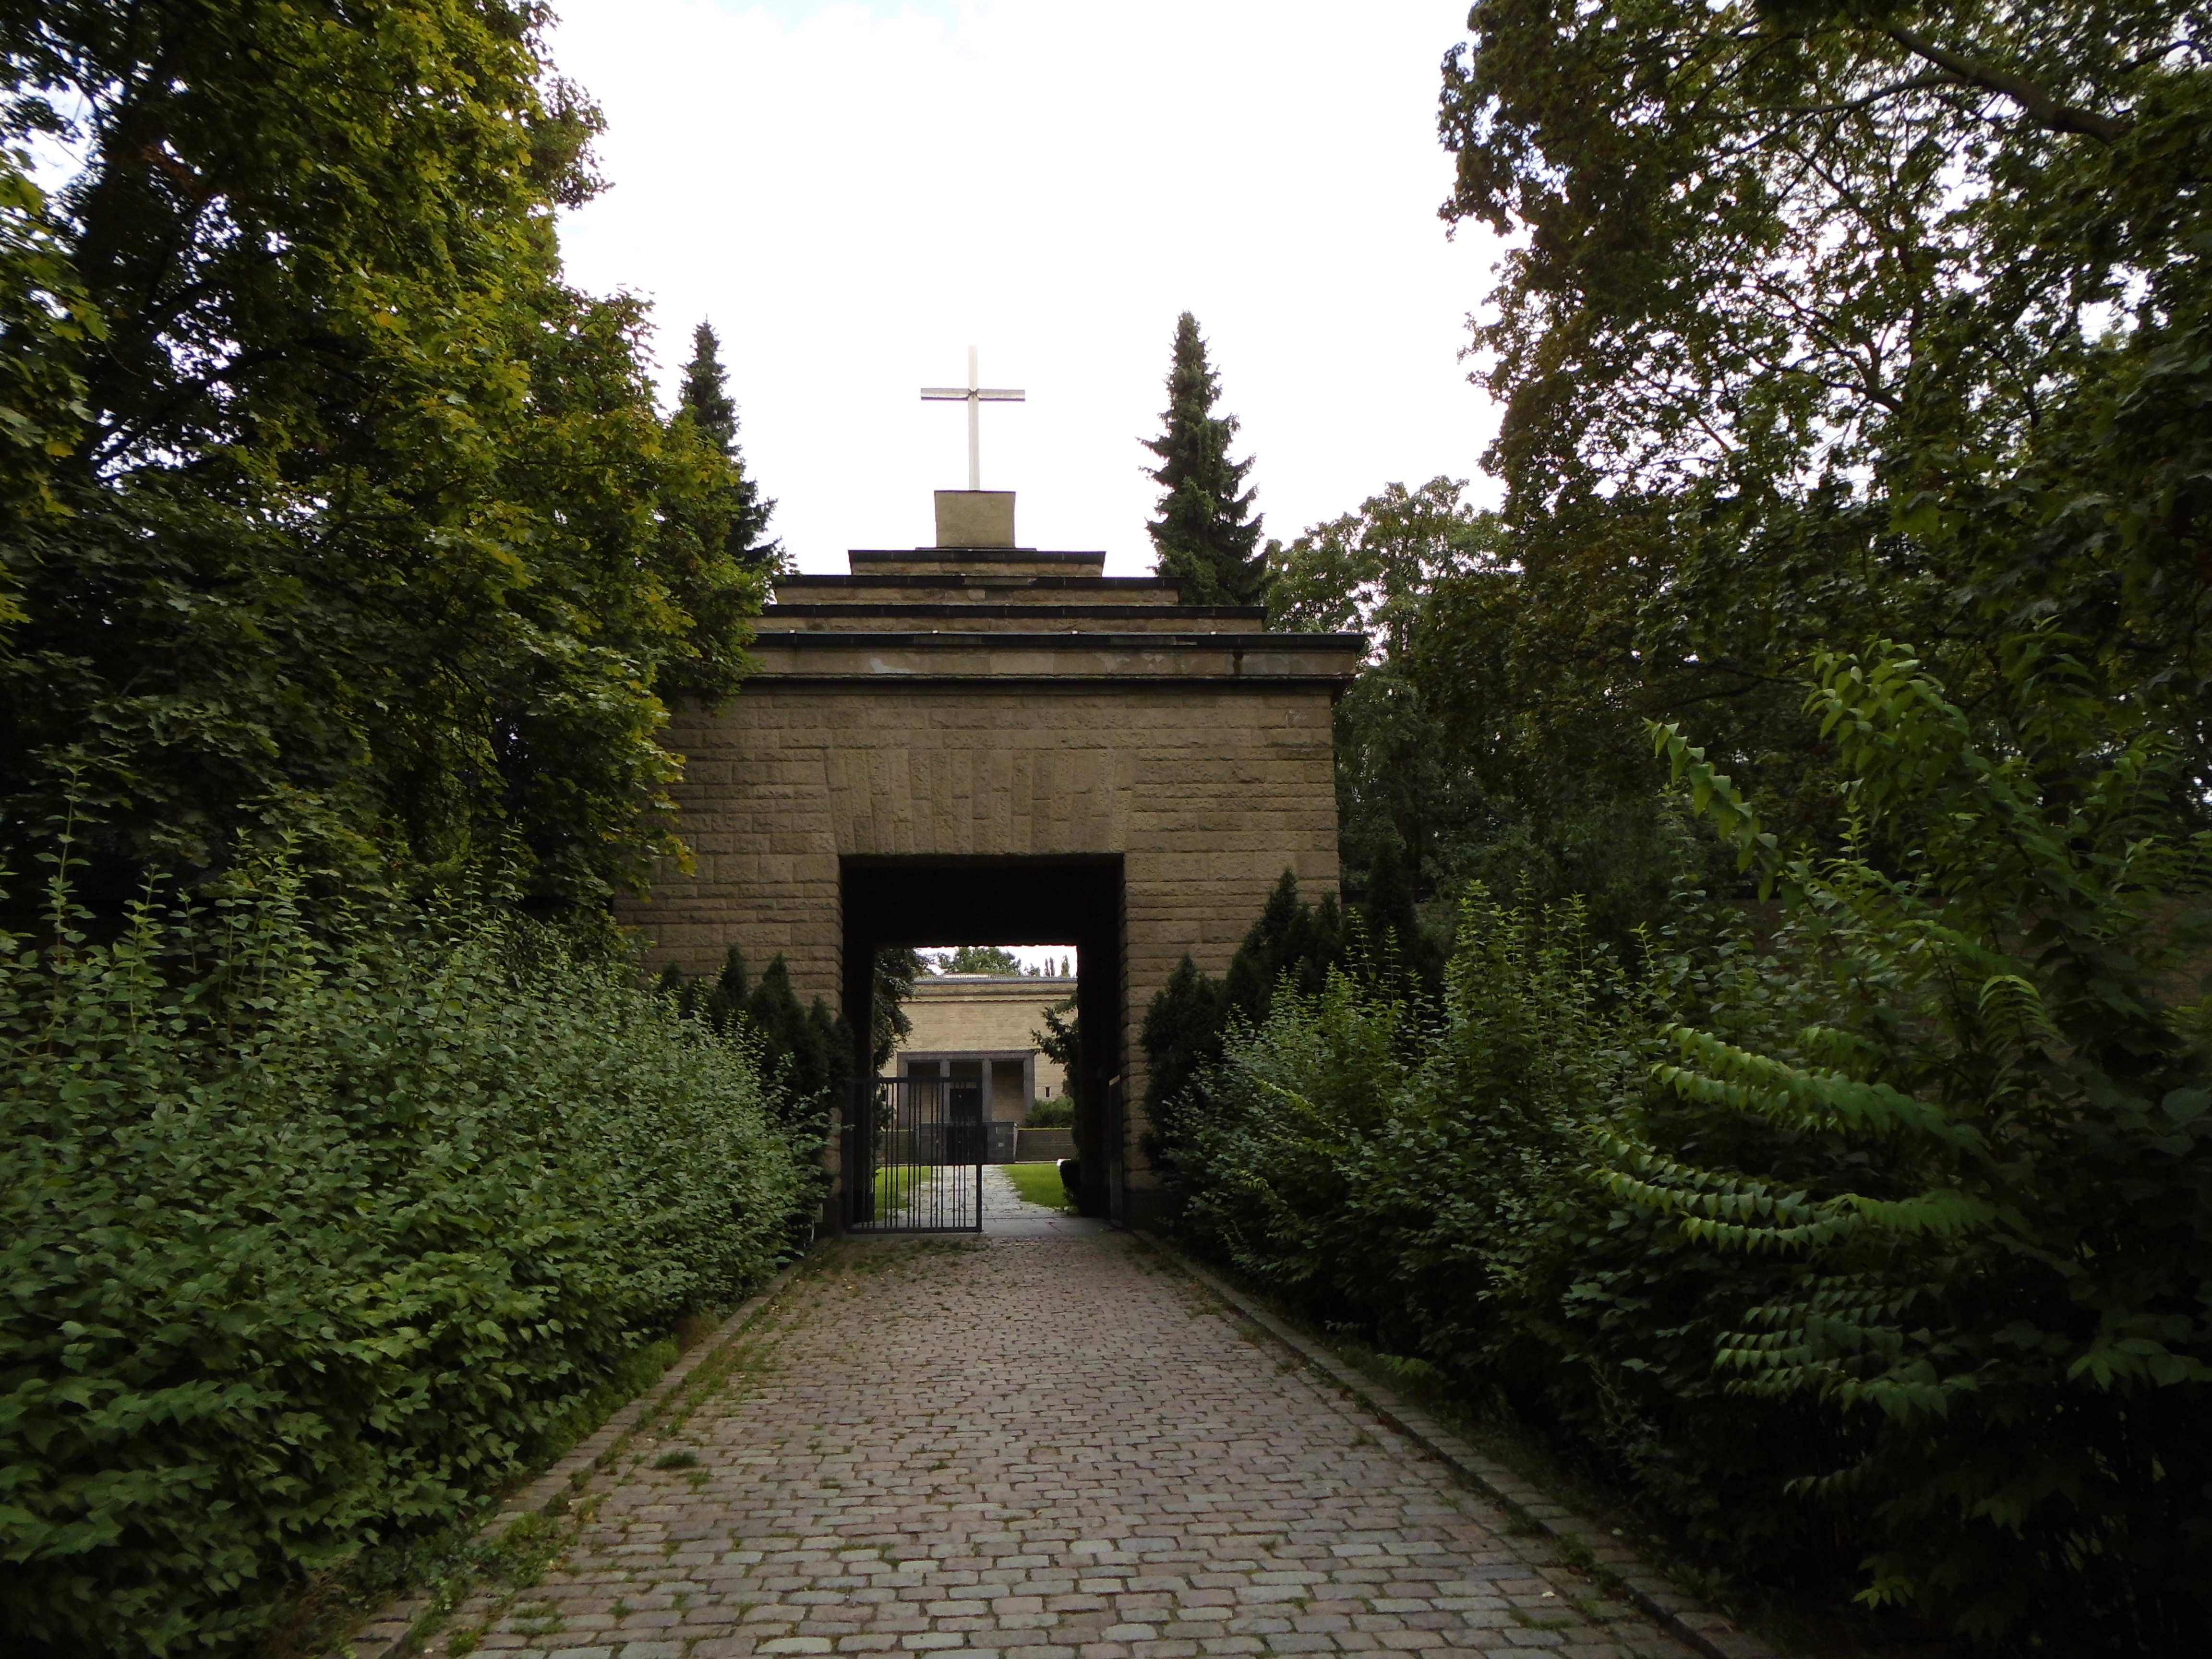 Farbfoto: Der Eingang zum landeseigenen Friedhof Lilienthalstrsse im Volkspark Hasenheide im August des Jahres 2014. Fotograf: Bernd Paepcke.